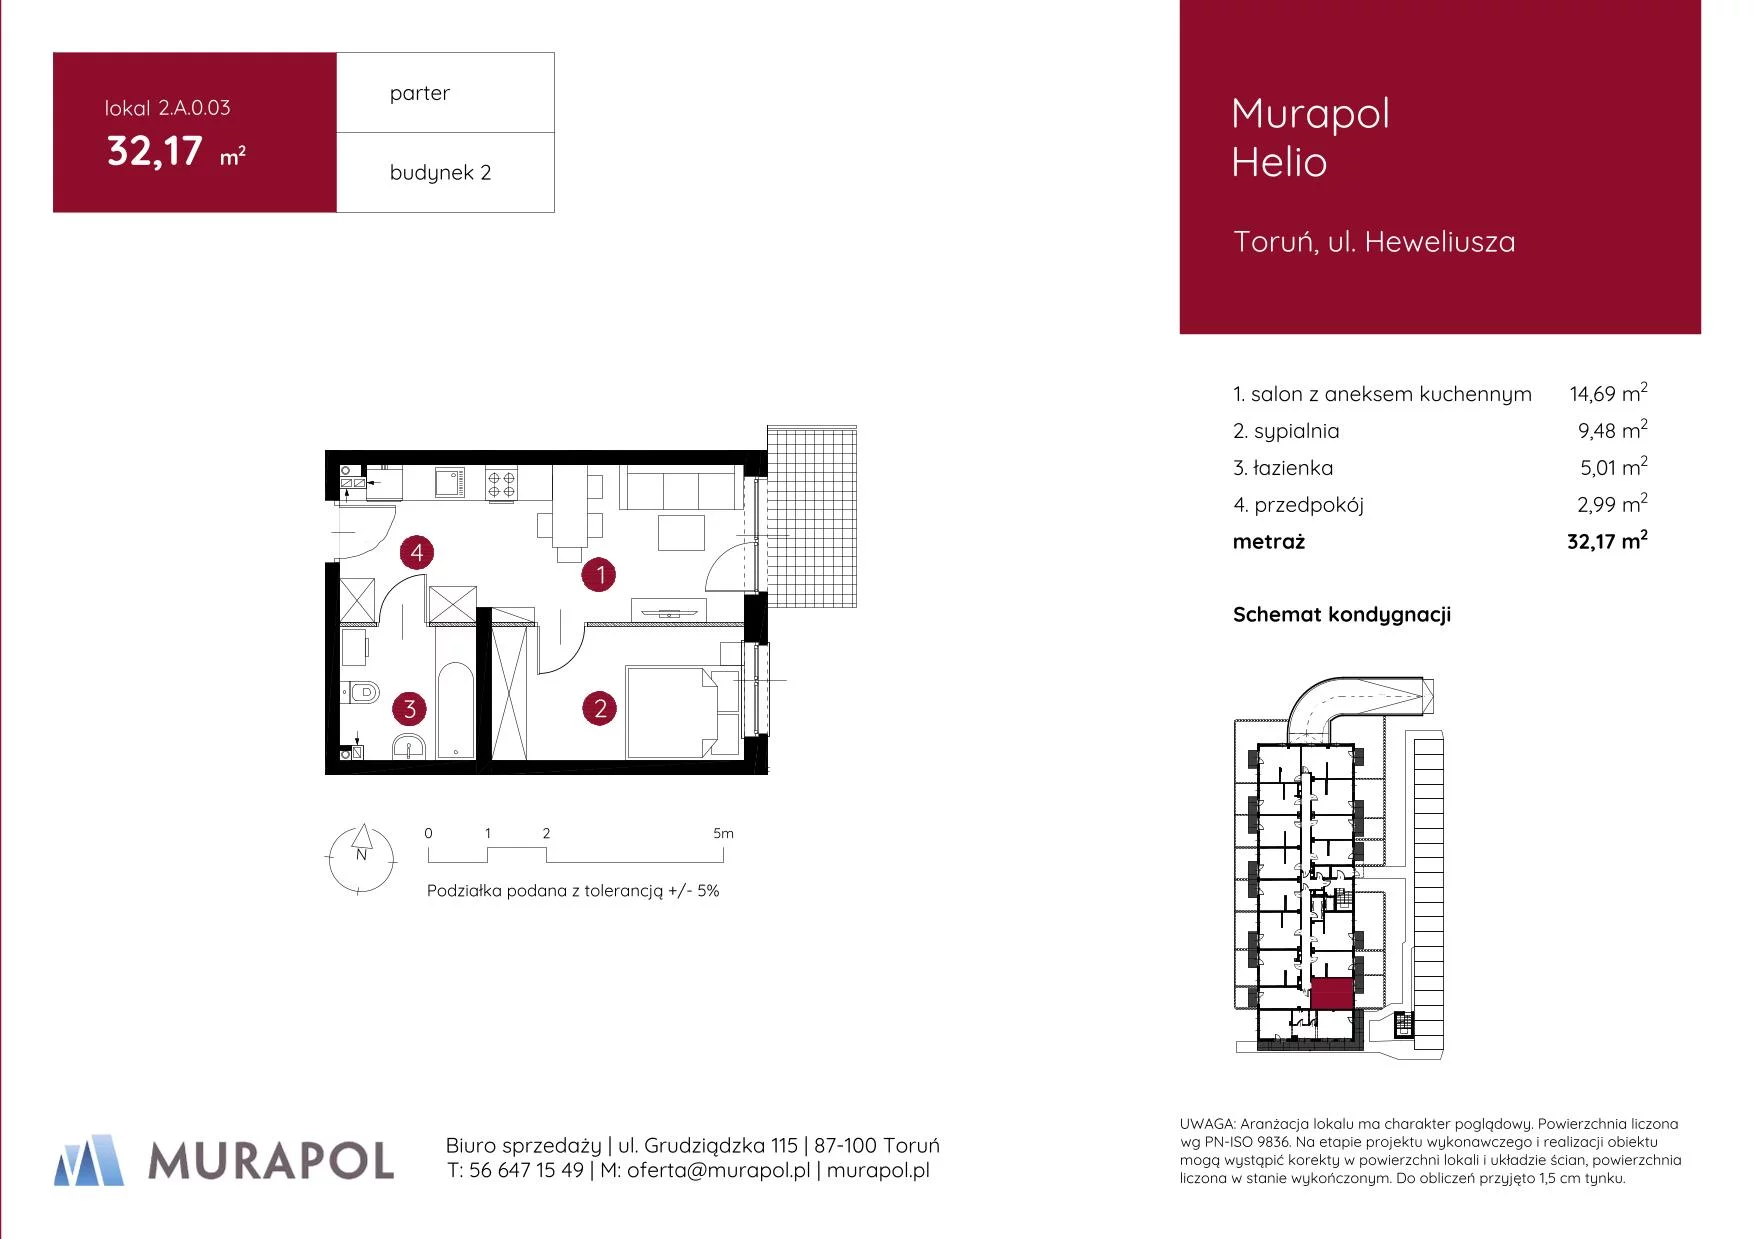 Mieszkanie 32,17 m², parter, oferta nr 2.A.0.03, Murapol Helio, Toruń, Wrzosy, JAR, ul. Heweliusza